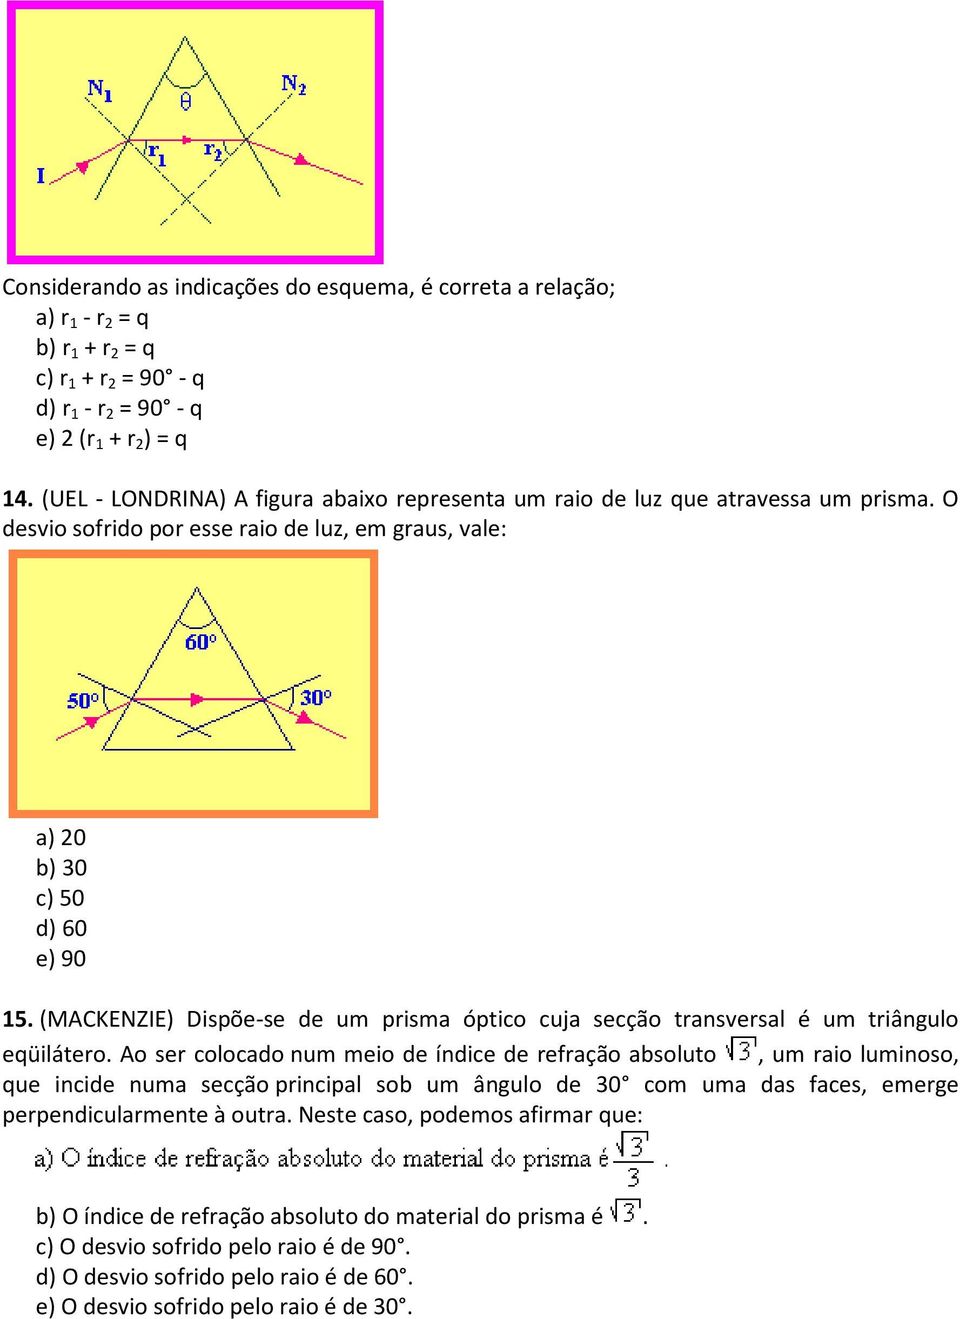 (MACKENZIE) Dispõe-se de um prisma óptico cuja secção transversal é um triângulo eqüilátero.